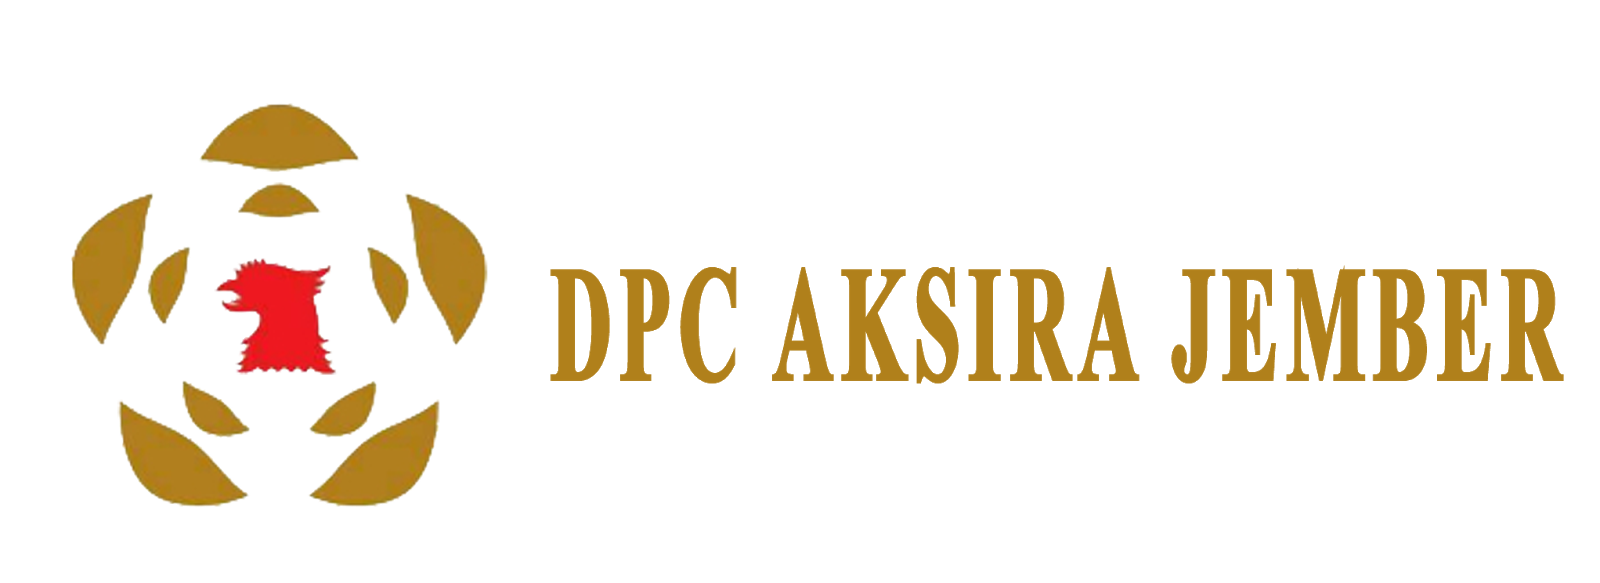 DPC AKSIRA JEMBER